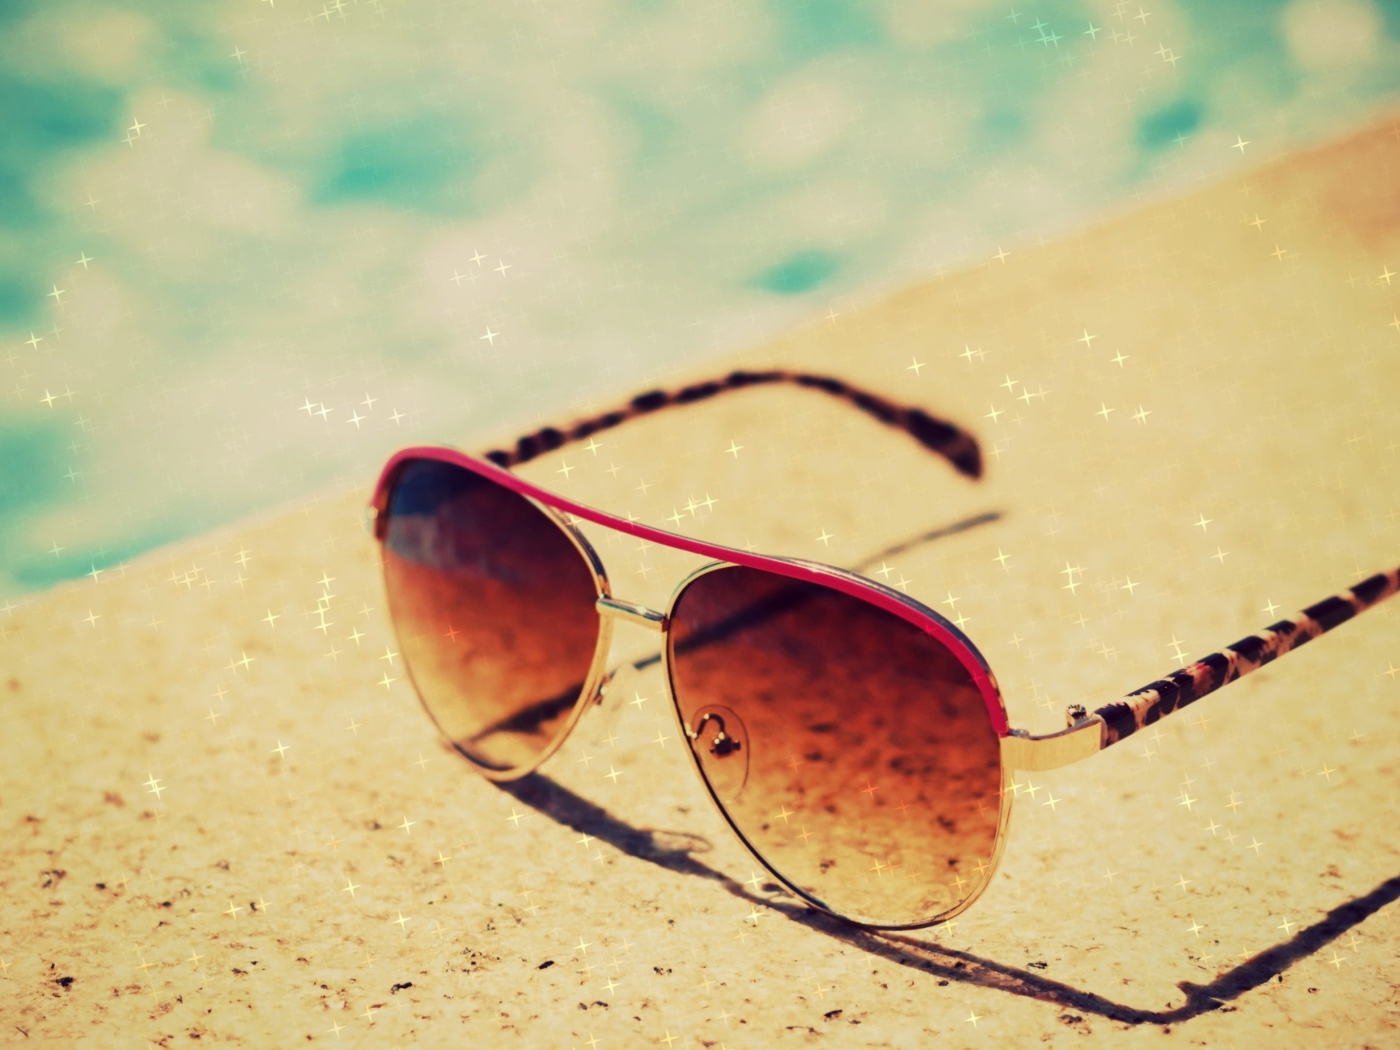 Das Sunglasses By Pool Wallpaper 1400x1050